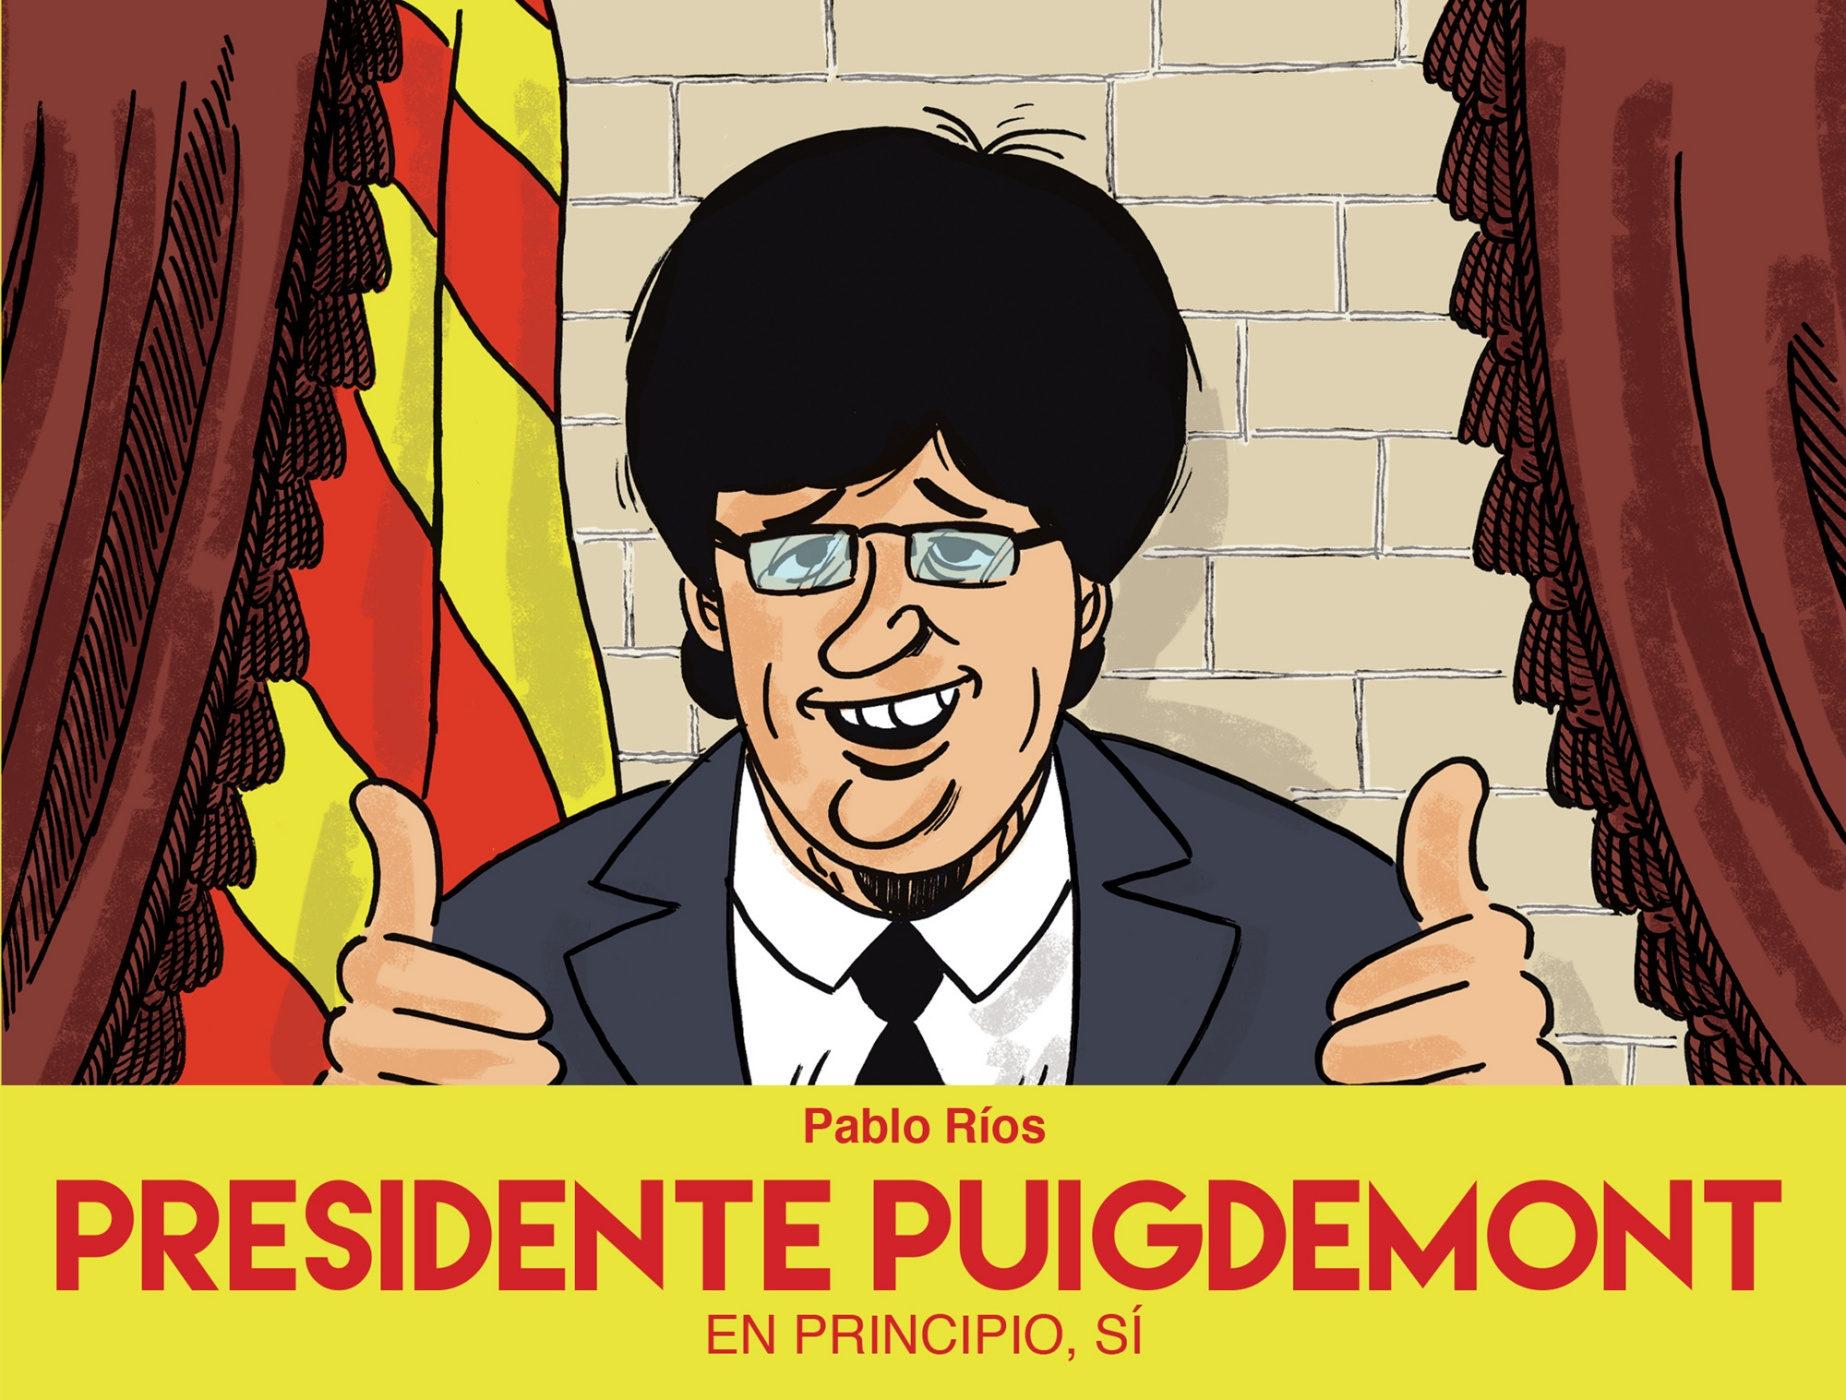 Presidente Puigdemont "En principio, sí". 